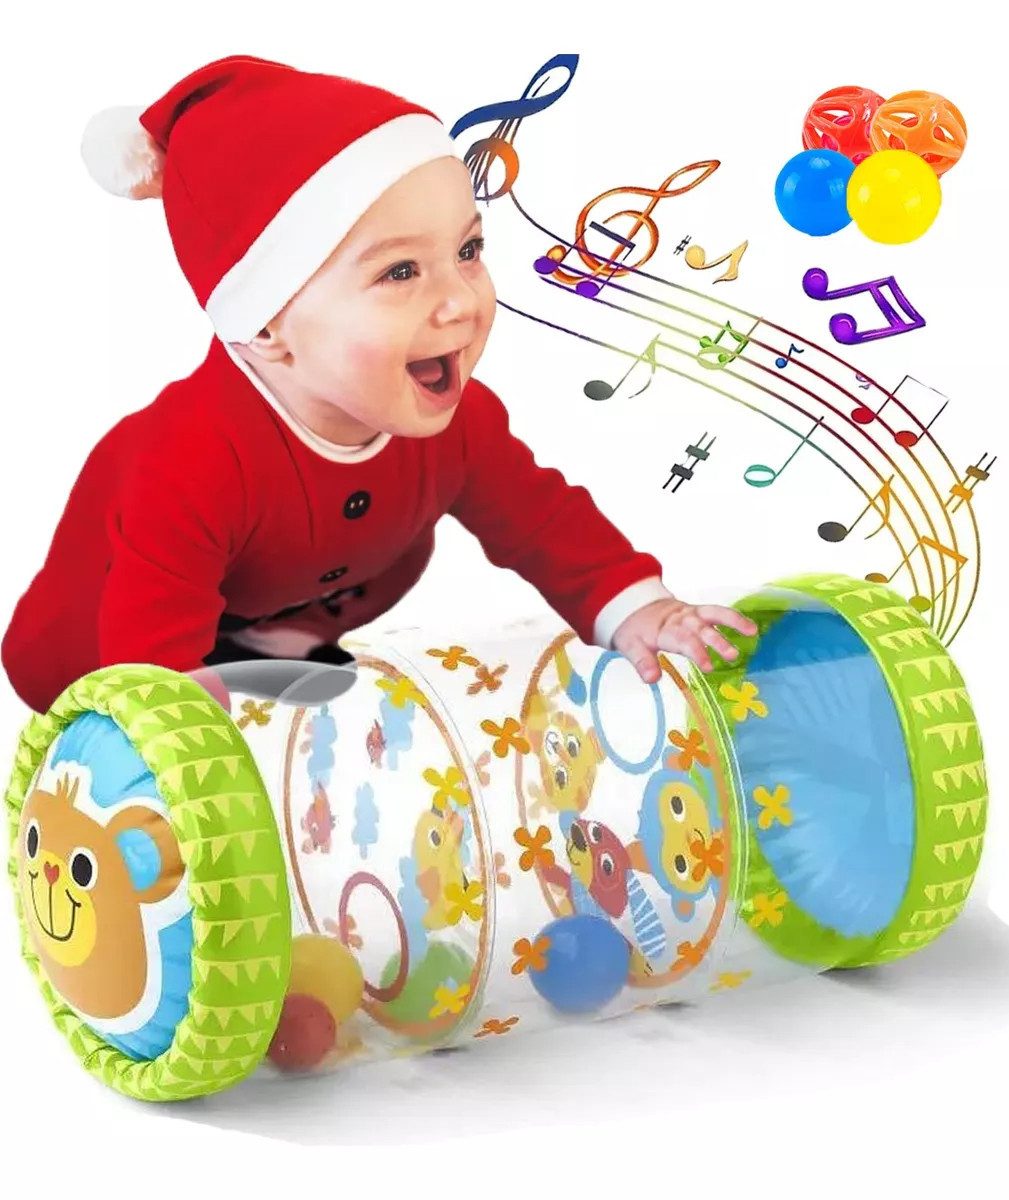 Cbei Krabbelrolle Baby-Rolle Krabbelrolle Baby Krabbelspielzeug krabbelhilfe, (1-tlg., Baby-Anfänger-Krabbelspielzeug mit Bällen und Glöckchen), Aufblasbares Baby-Rollerspielzeug, Krabbelspielzeug für Babys